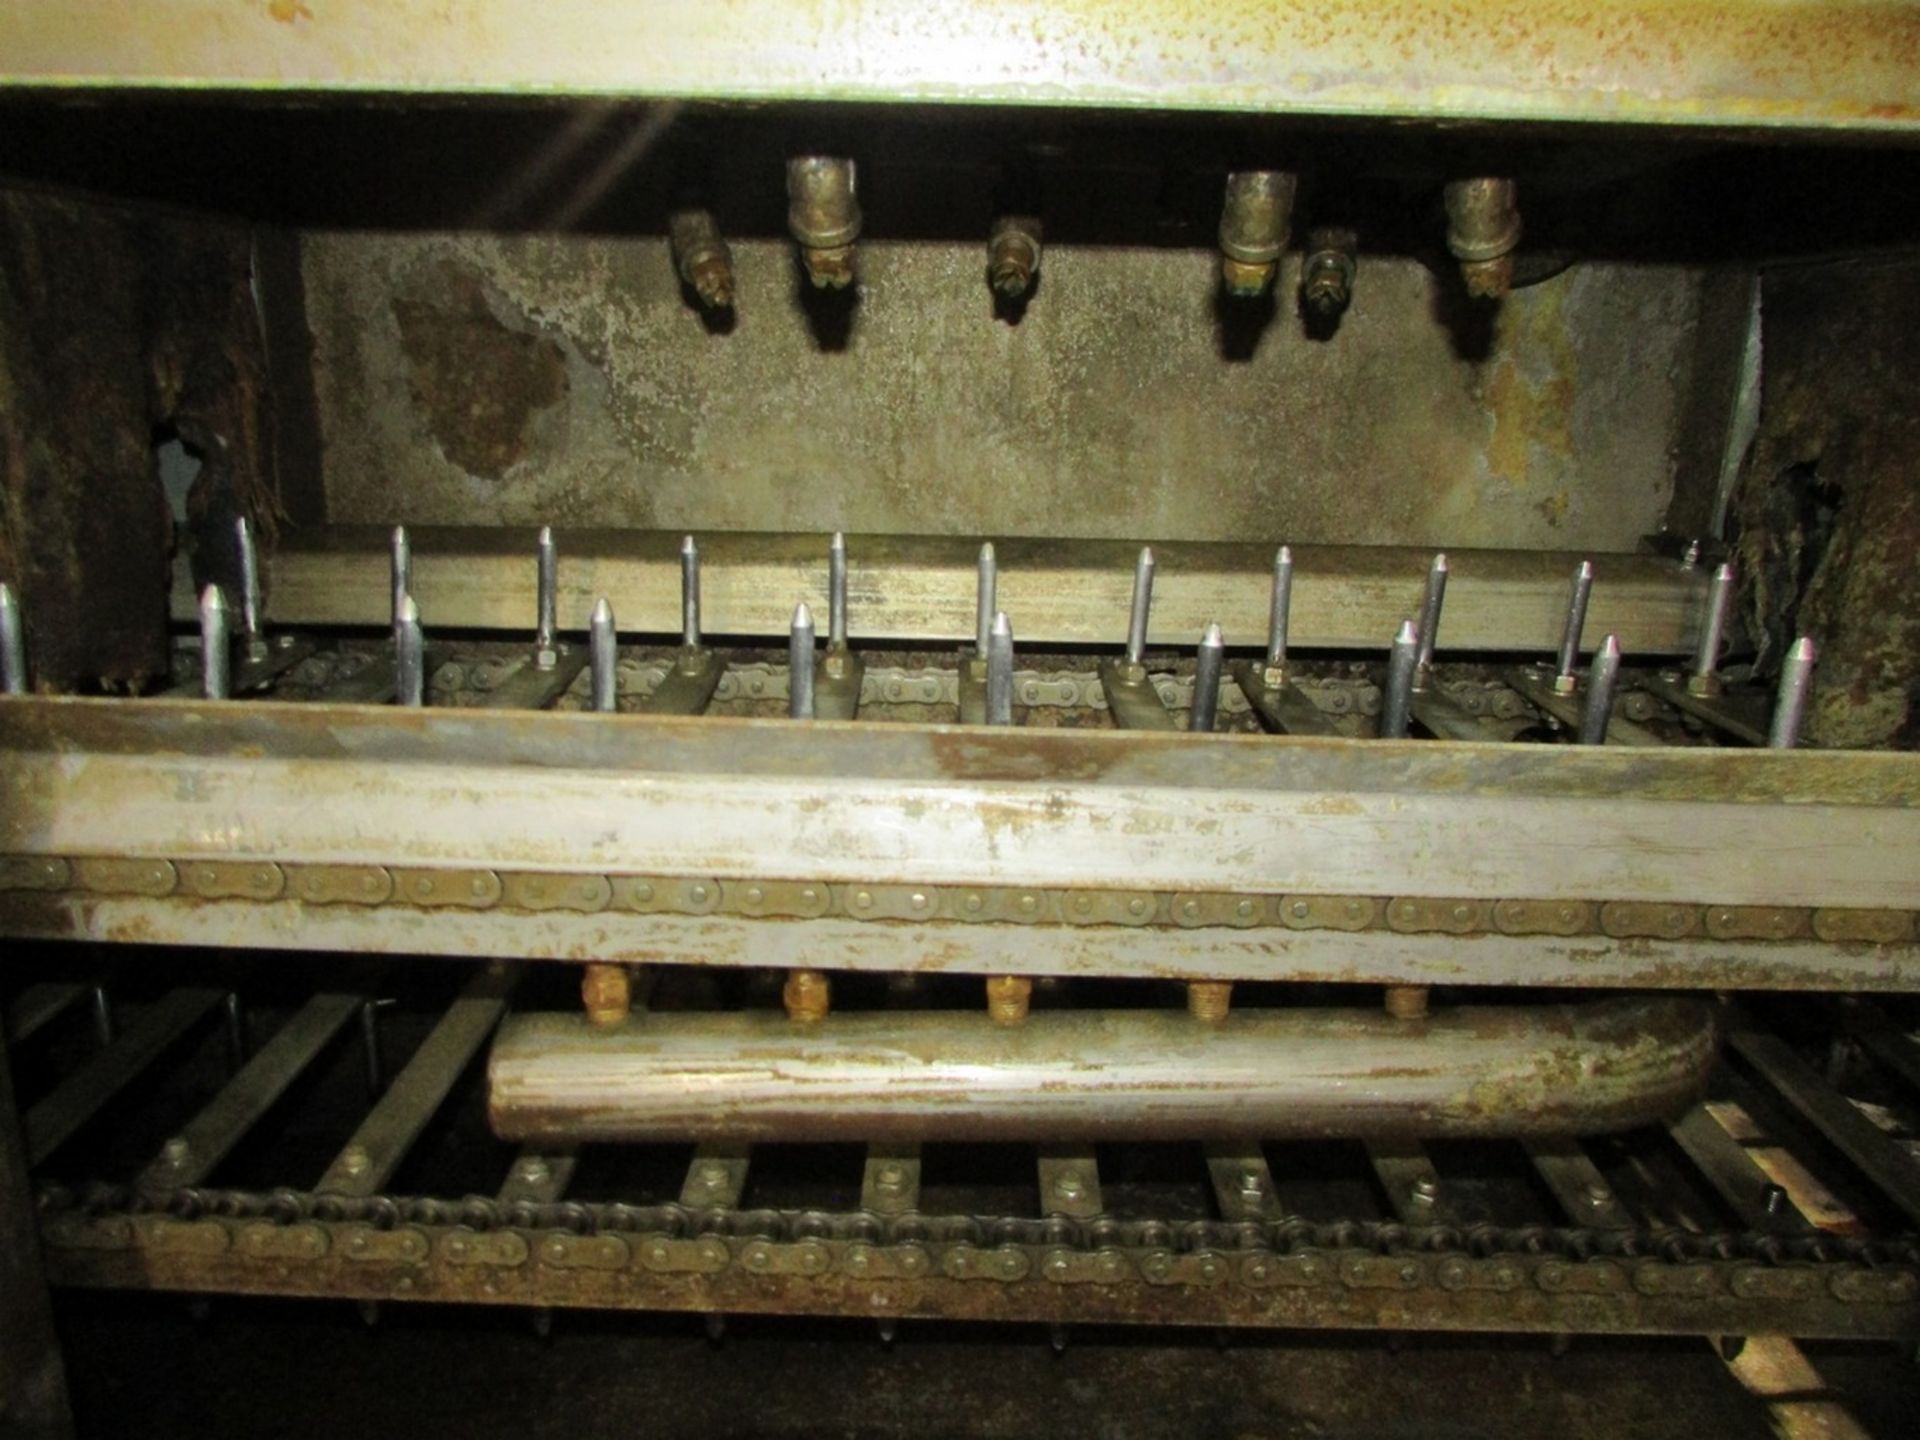 Automated Finishing Model 4078 Automatic Conveyor Parts Washer - Image 5 of 14